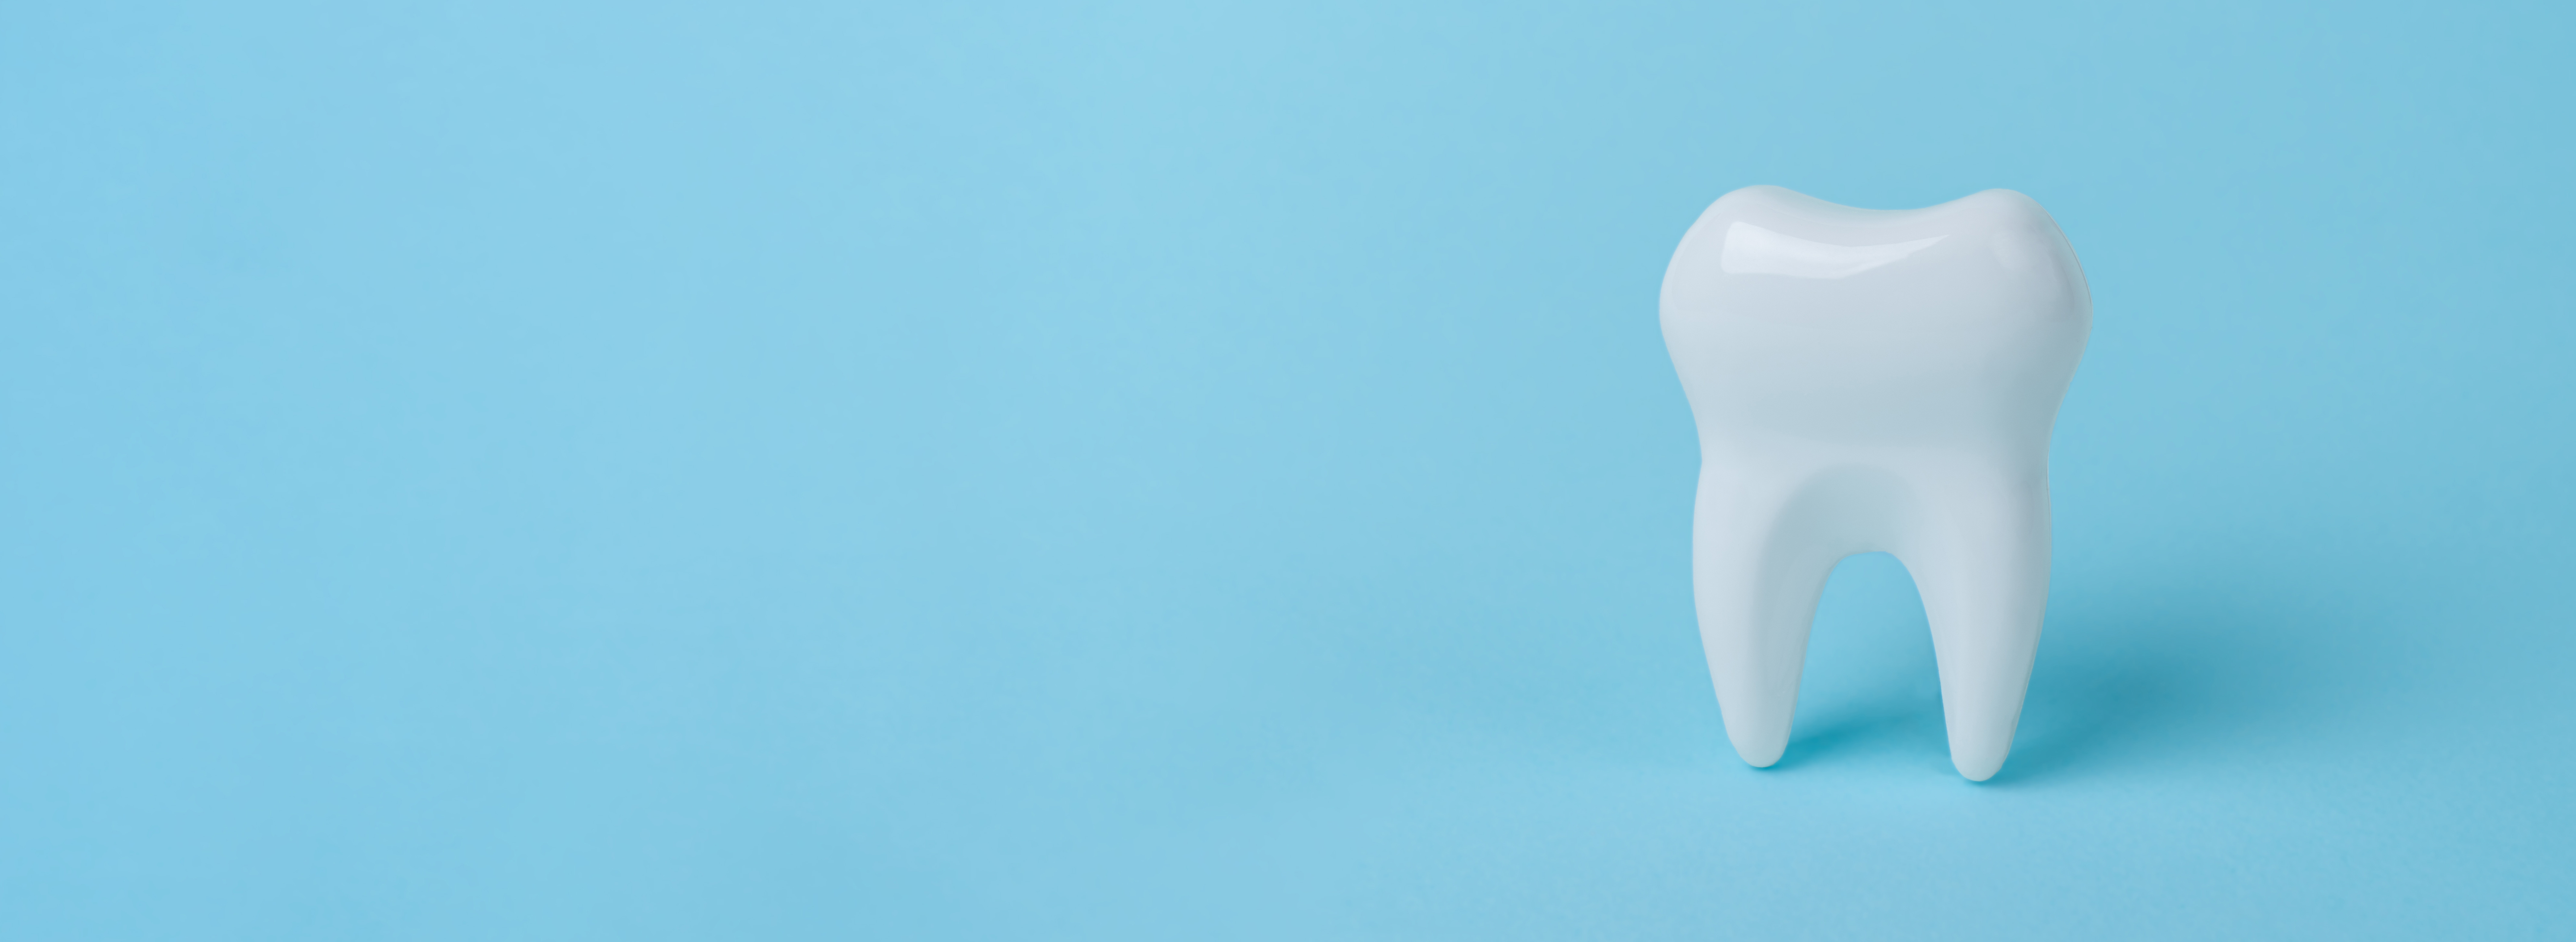 Das Bild zeigt einen einzelnen Zahn als Modell vor blauem Hintergrund